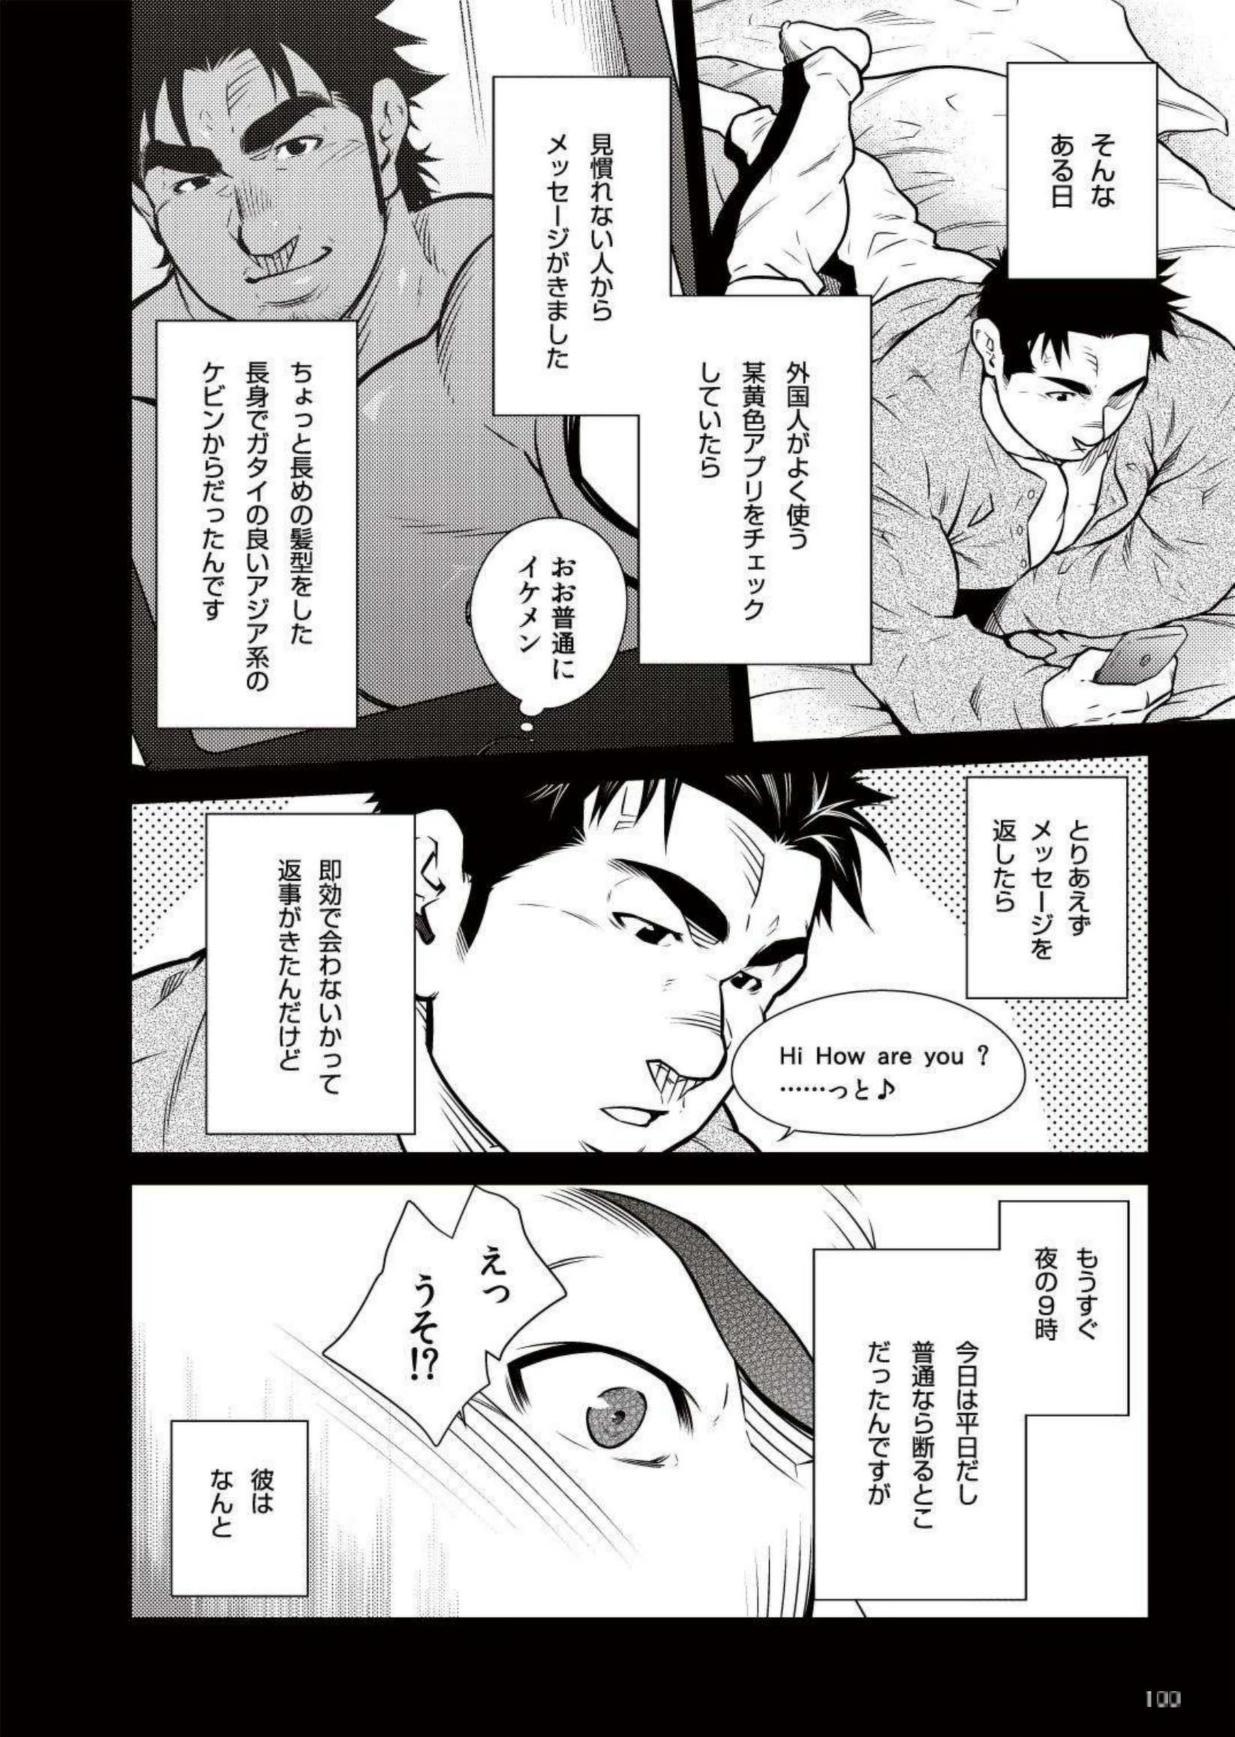 Money Talks Terujirou - 晃次郎 - Badi Bʌ́di (バディ) 111 (May 2015) Ecchi - Page 2